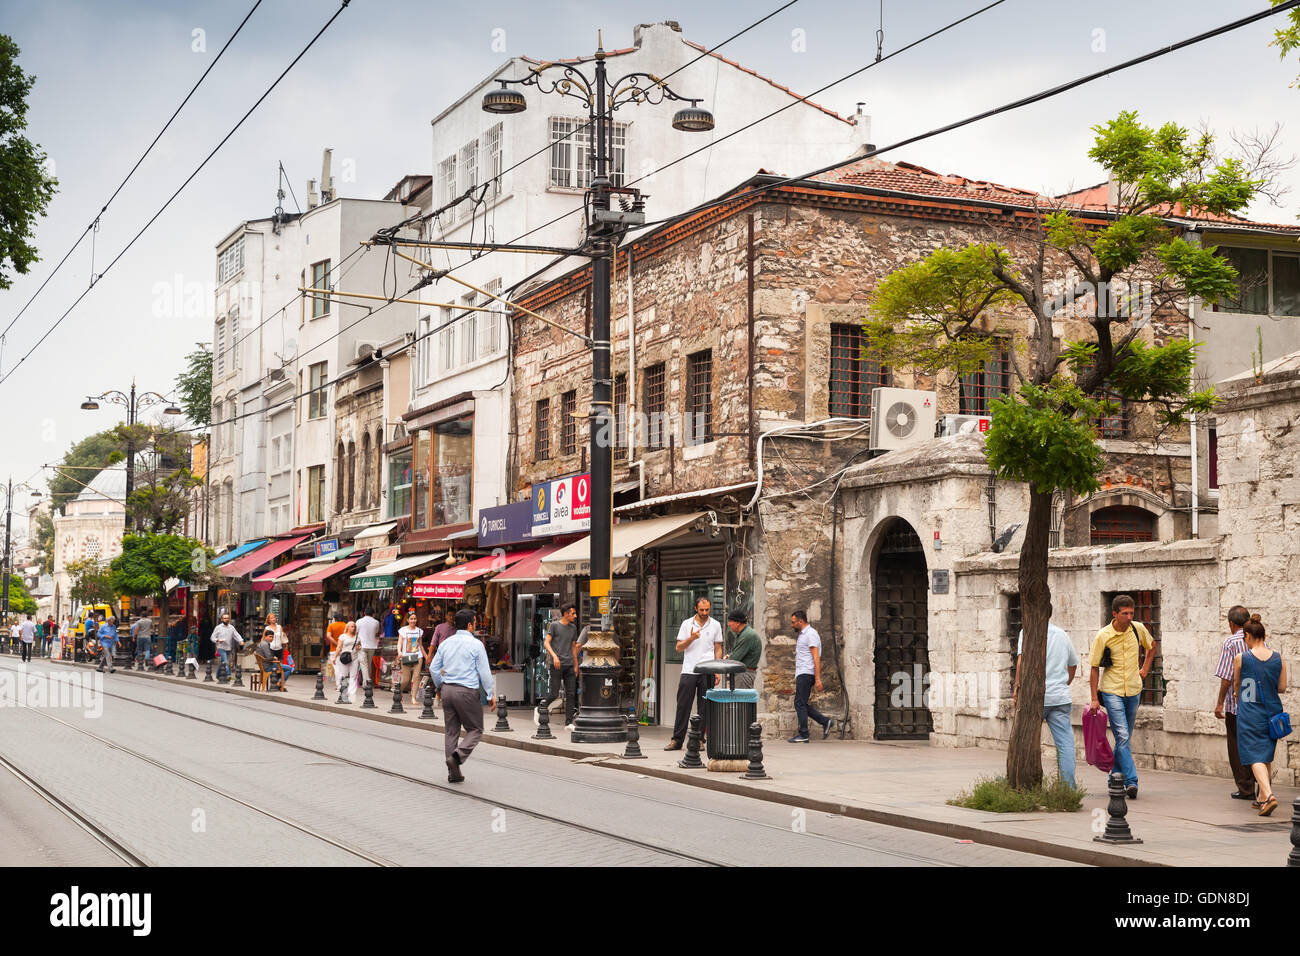 Istanbul, Turquie - 28 juin 2016 : les gens ordinaires à pied sur la rue dans le vieux quartier central de la ville d'Istanbul Banque D'Images